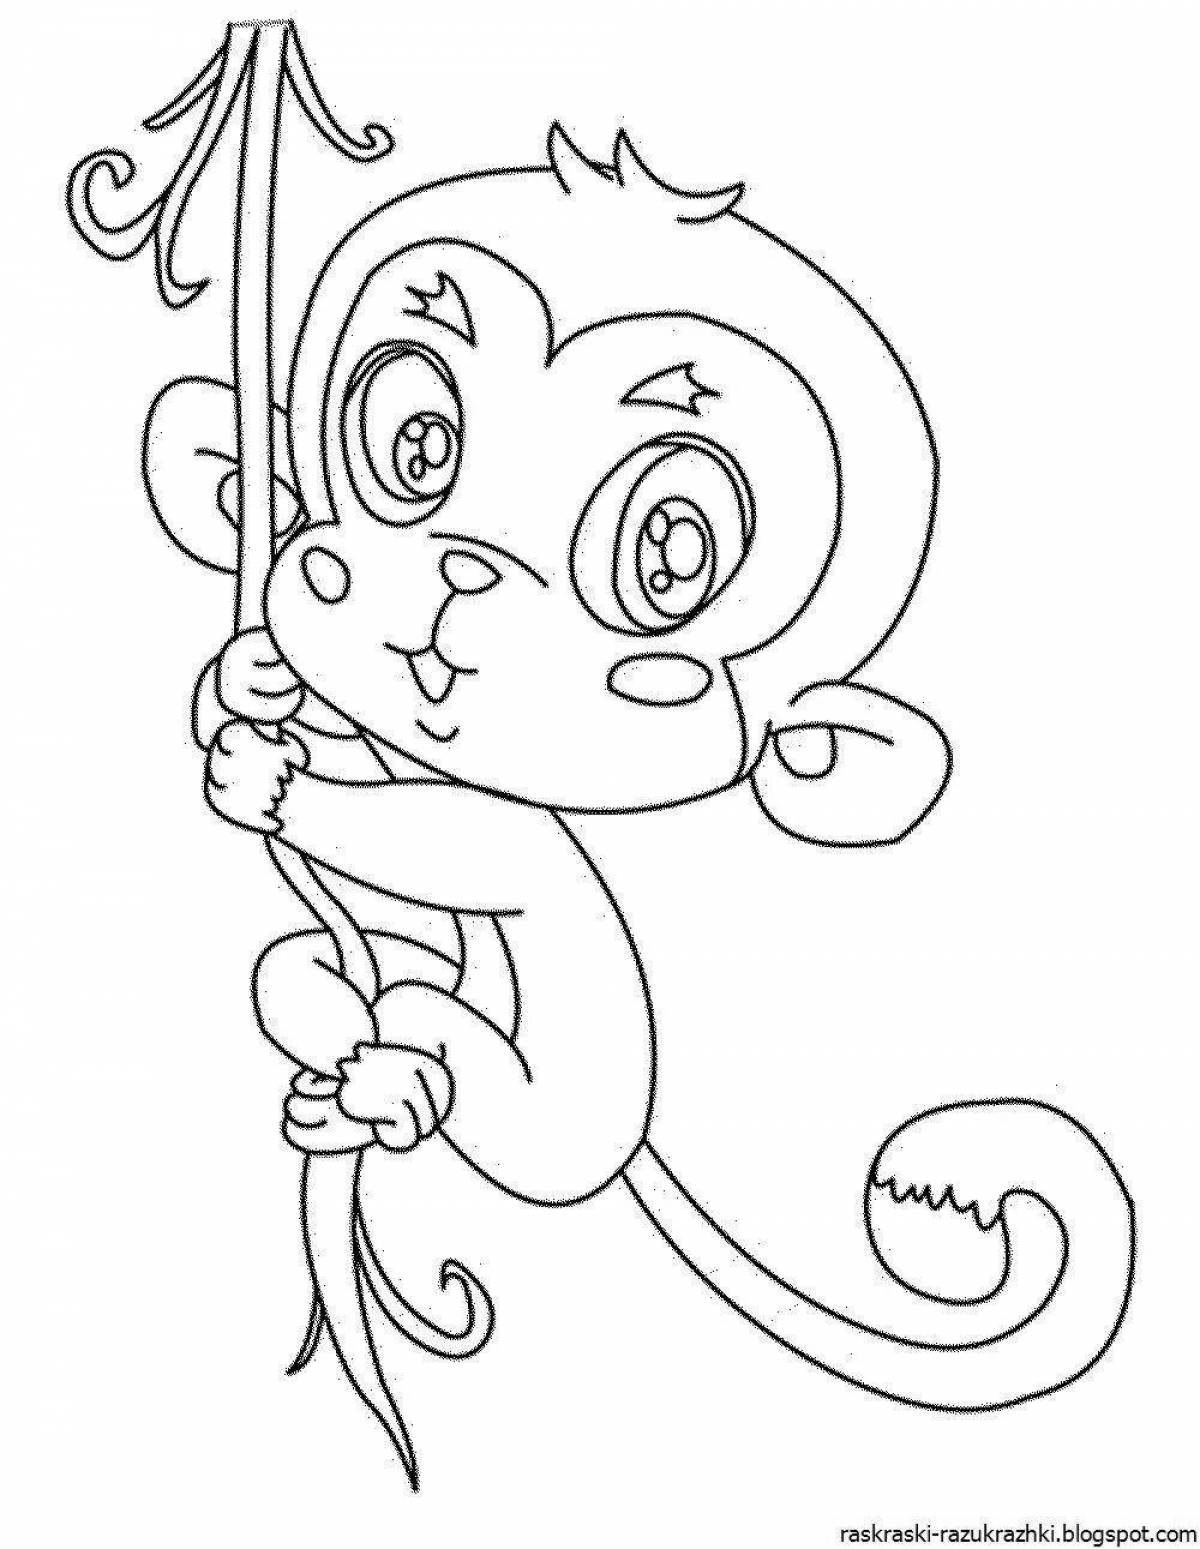 Игривый рисунок обезьяны для детей